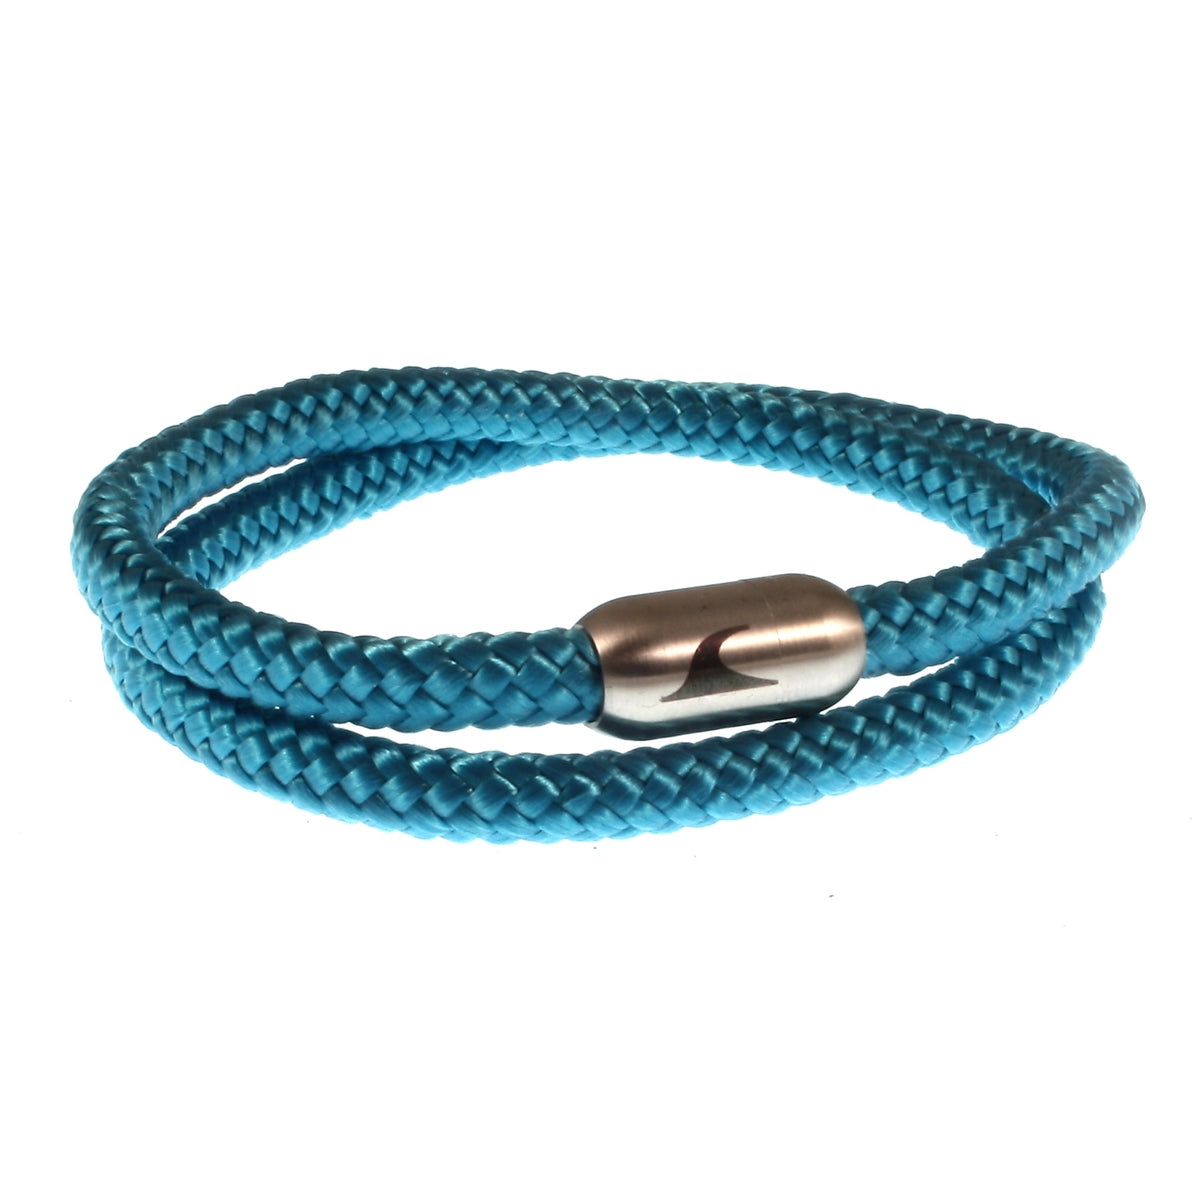 Herren-Segeltau-Armband-damen-hawaii-blau-silber-Edelstahlverschluss-vorn-wavepirate-shop-st